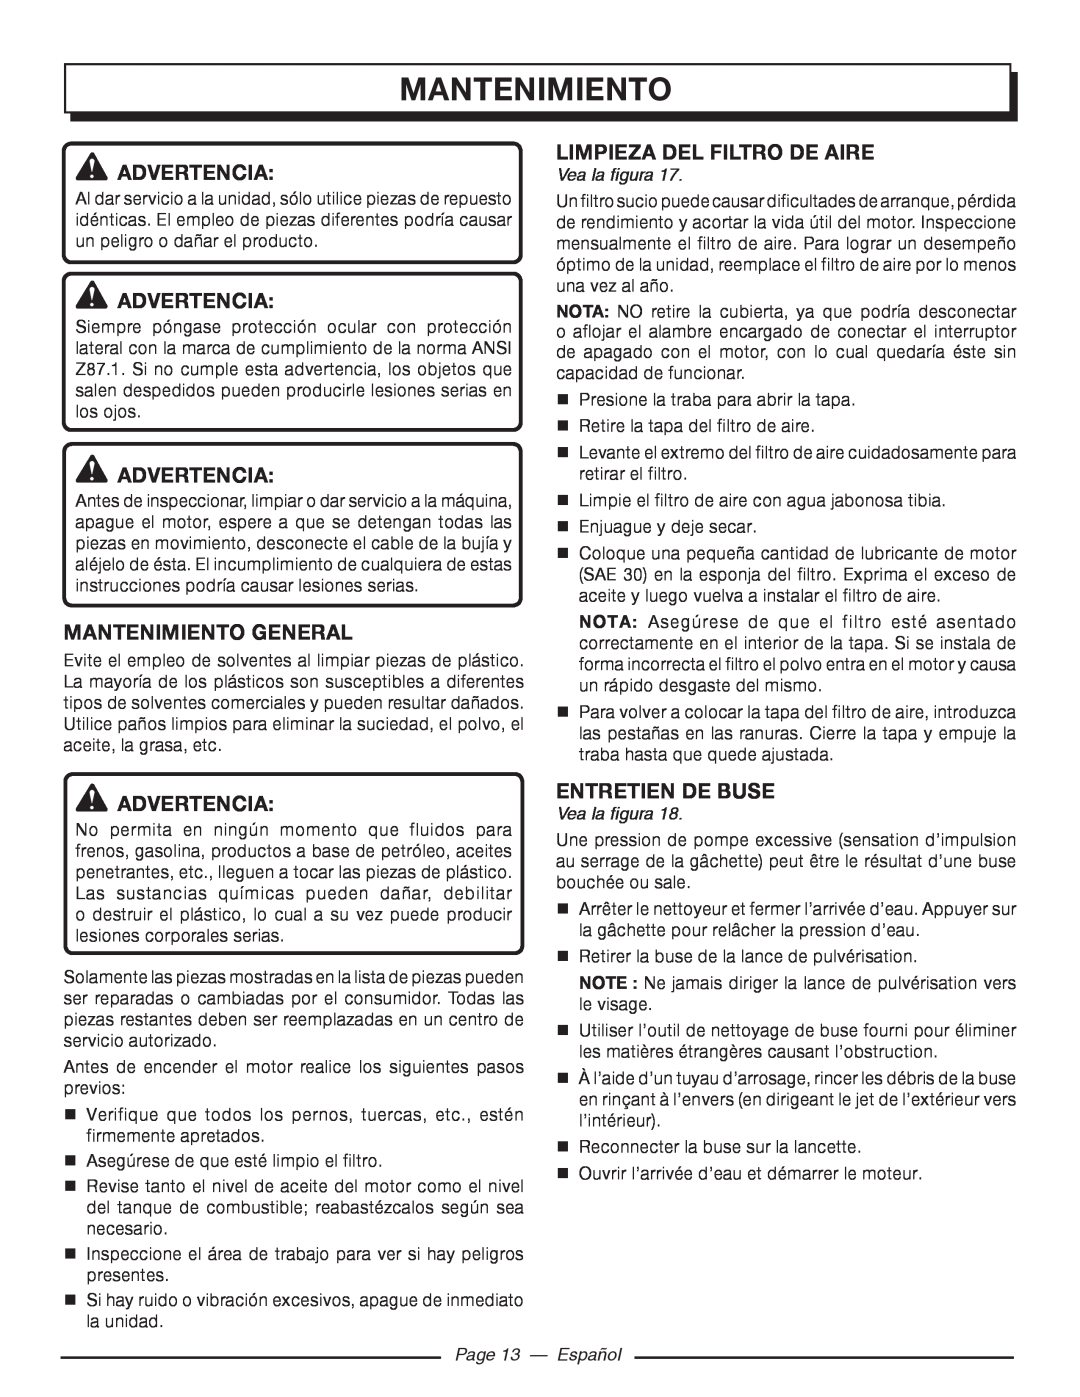 Homelite UT80516 Mantenimiento General, limpieza del filtro de aire, Page 13 - Español, Advertencia, entretien de buse 